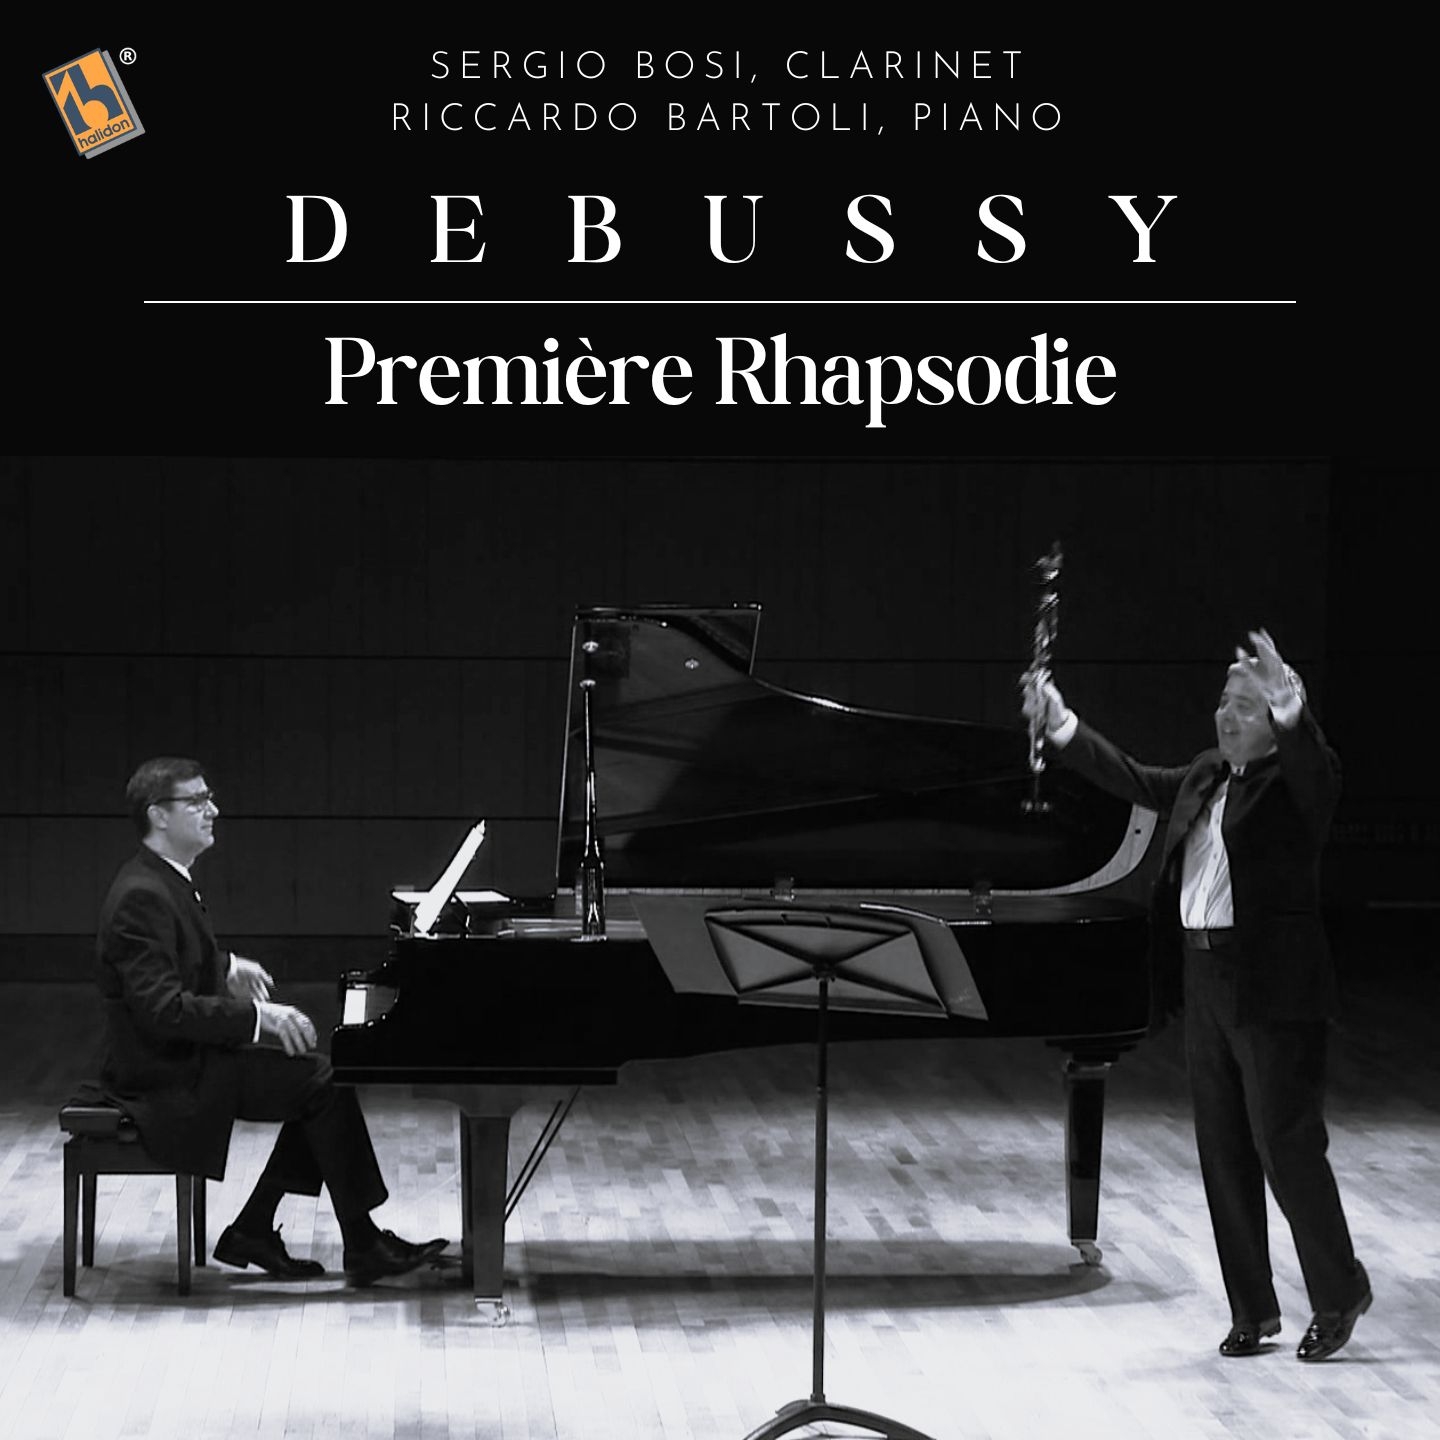 Debussy: Première rhapsodie